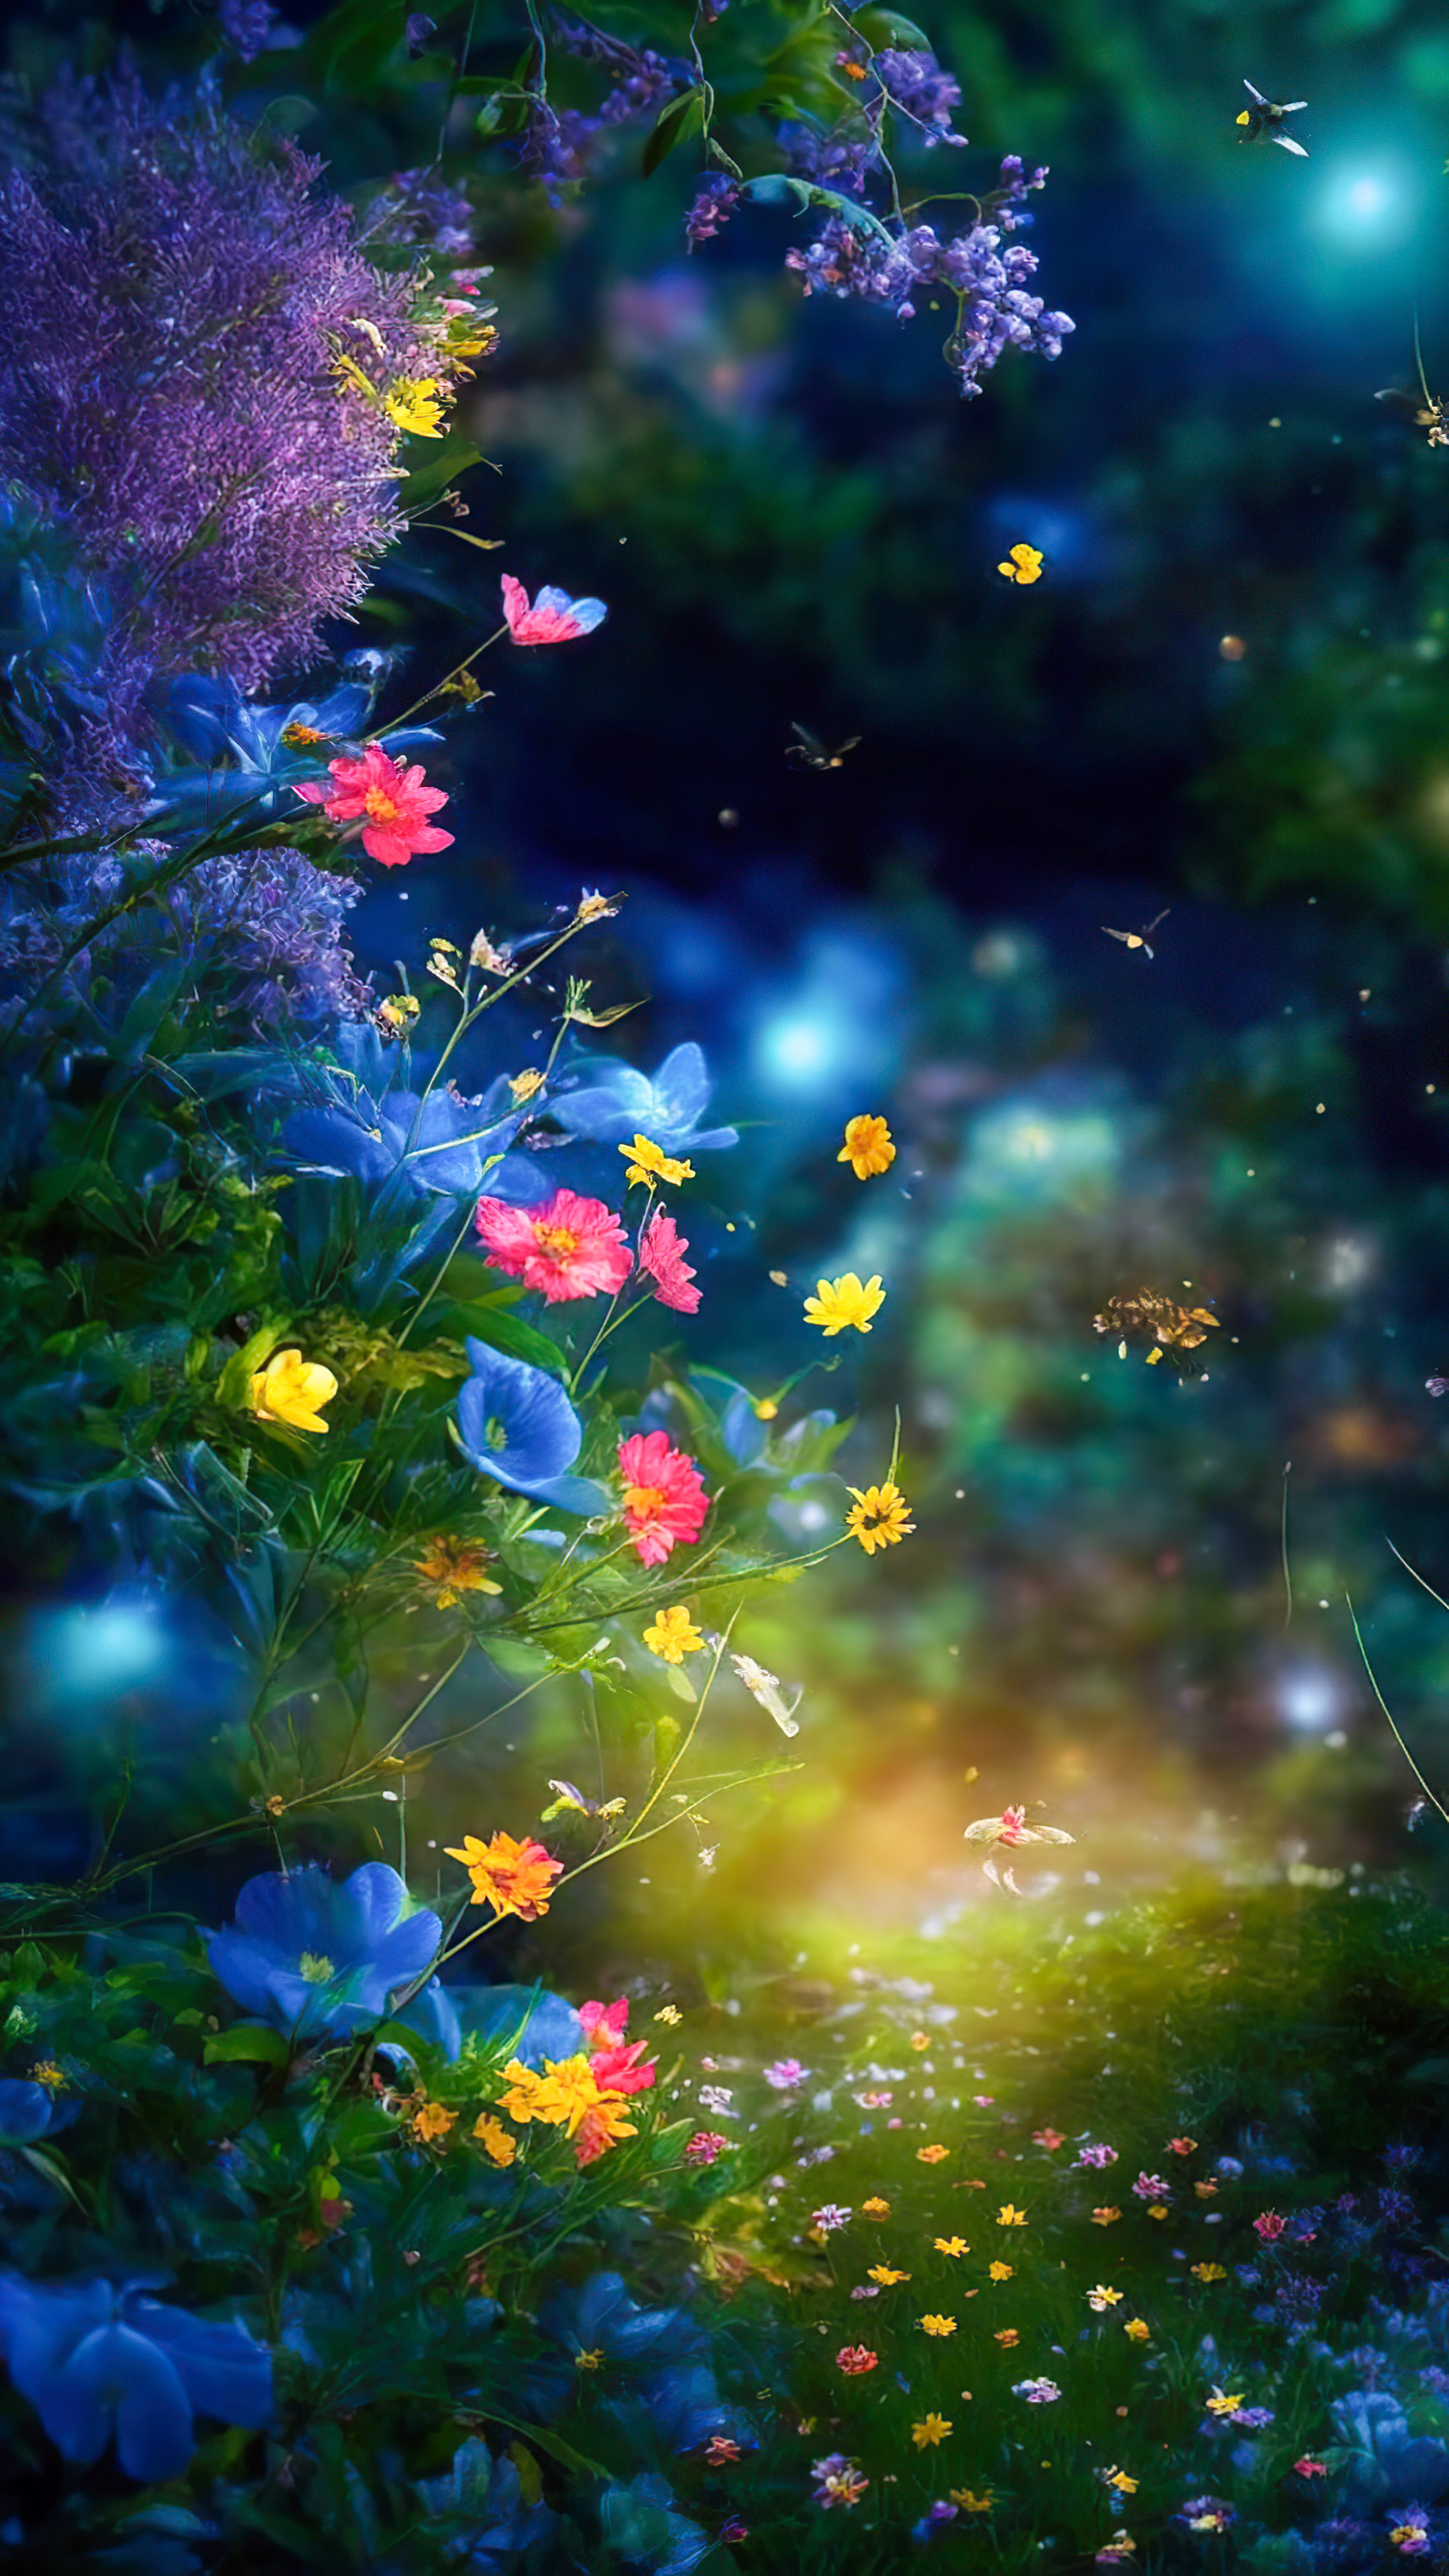 Faites l'expérience du mystère avec notre fond d'écran sombre de beaux paysages, illustrant un jardin magique et capricieux la nuit, où les lucioles dansent autour de fleurs vibrantes et luminescentes.